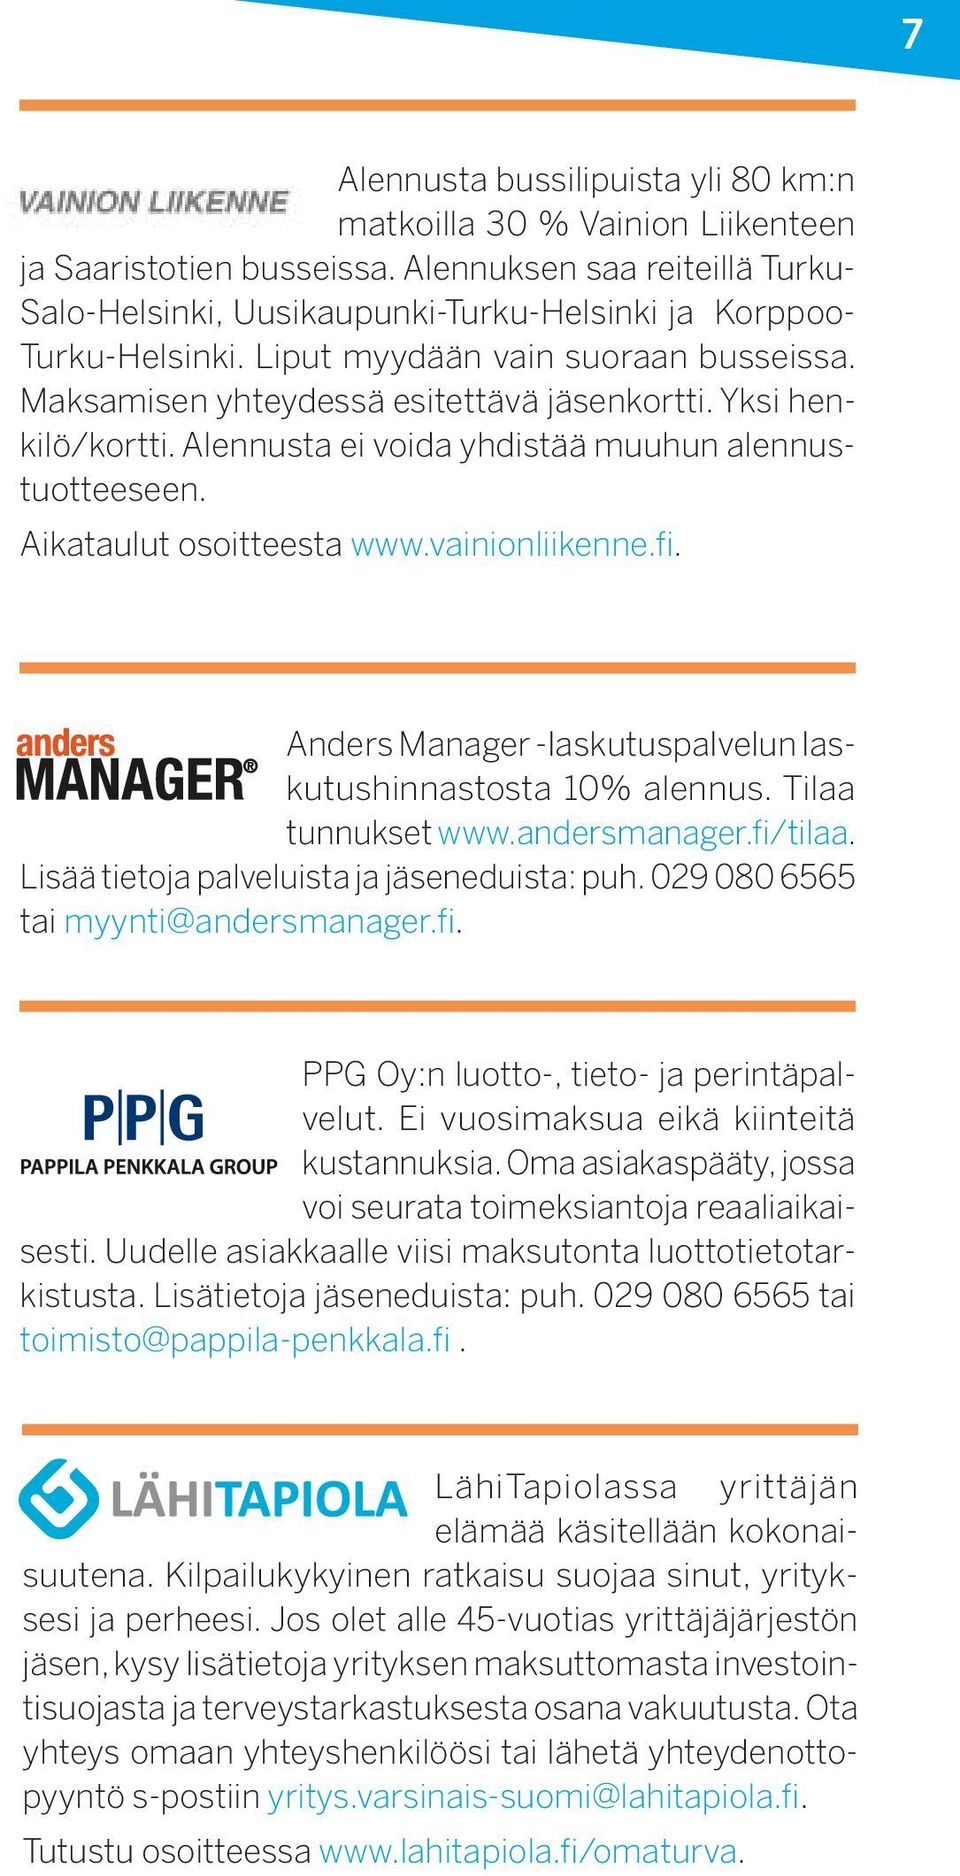 Yksi henkilö/kortti. Alennusta ei voida yhdistää muuhun alennustuotteeseen. Aikataulut osoitteesta www.vainionliikenne.fi. Anders Manager -laskutuspalvelun laskutushinnastosta 10% alennus.